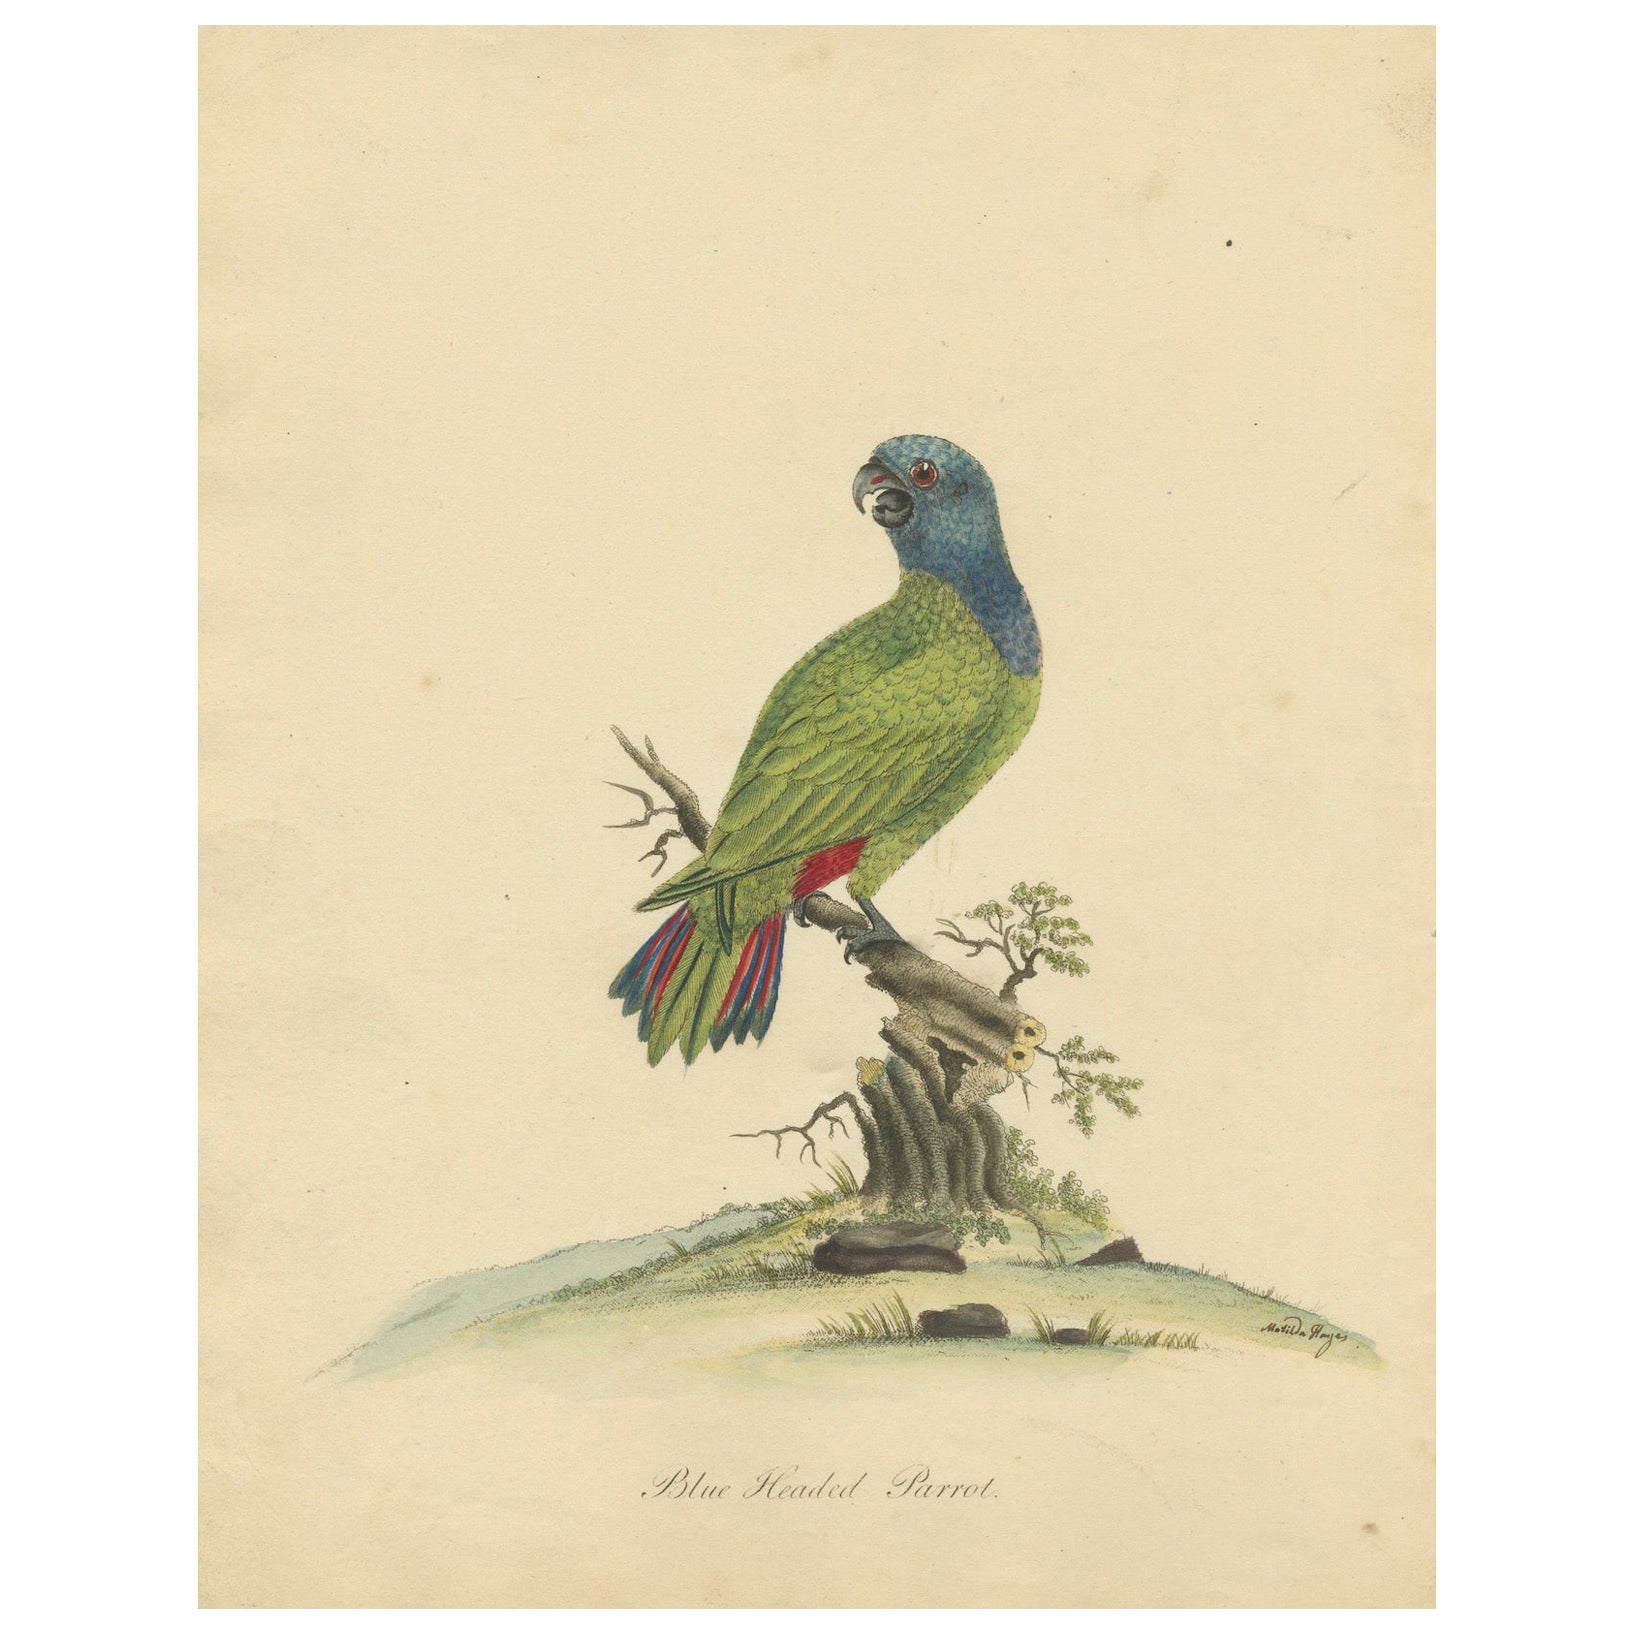 Original handkoloriertes Kupferblech mit Kupferstich des blauen Papageien mit Perlen, 1794